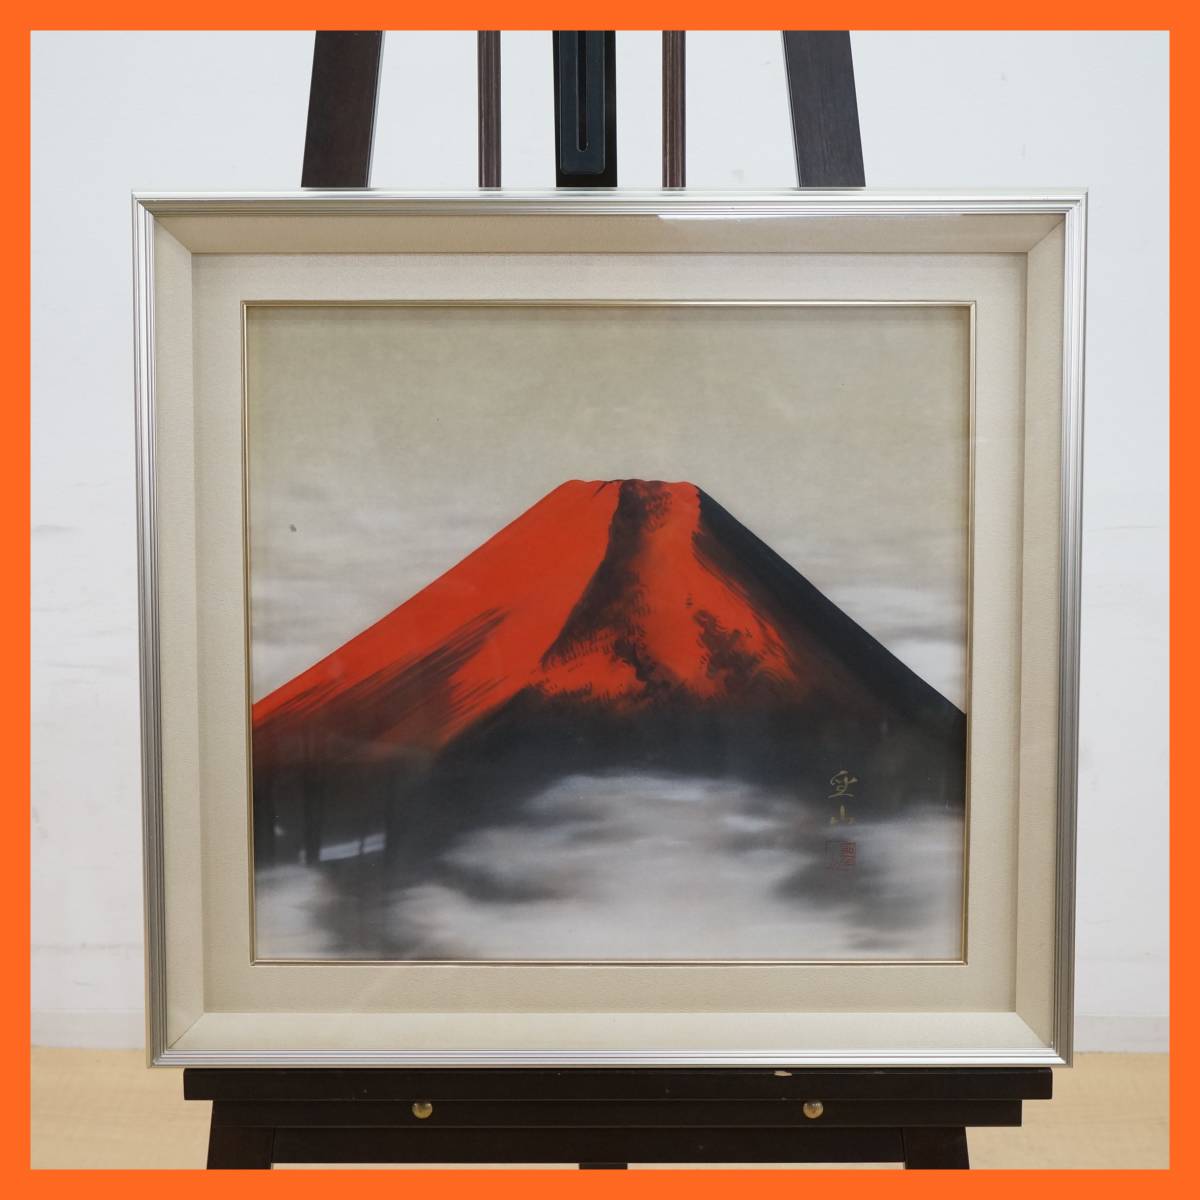 Toha : [Peinture japonaise] Peinture authentique de Seizan Nishioka Peinture du Mont Fuji rouge Dimensions du cadre env. 64, 1 cm x 60, 3 cm Oeuvre d'art Article encadré Image de bon augure Intérieur ★Livraison gratuite★, peinture, Peinture japonaise, autres